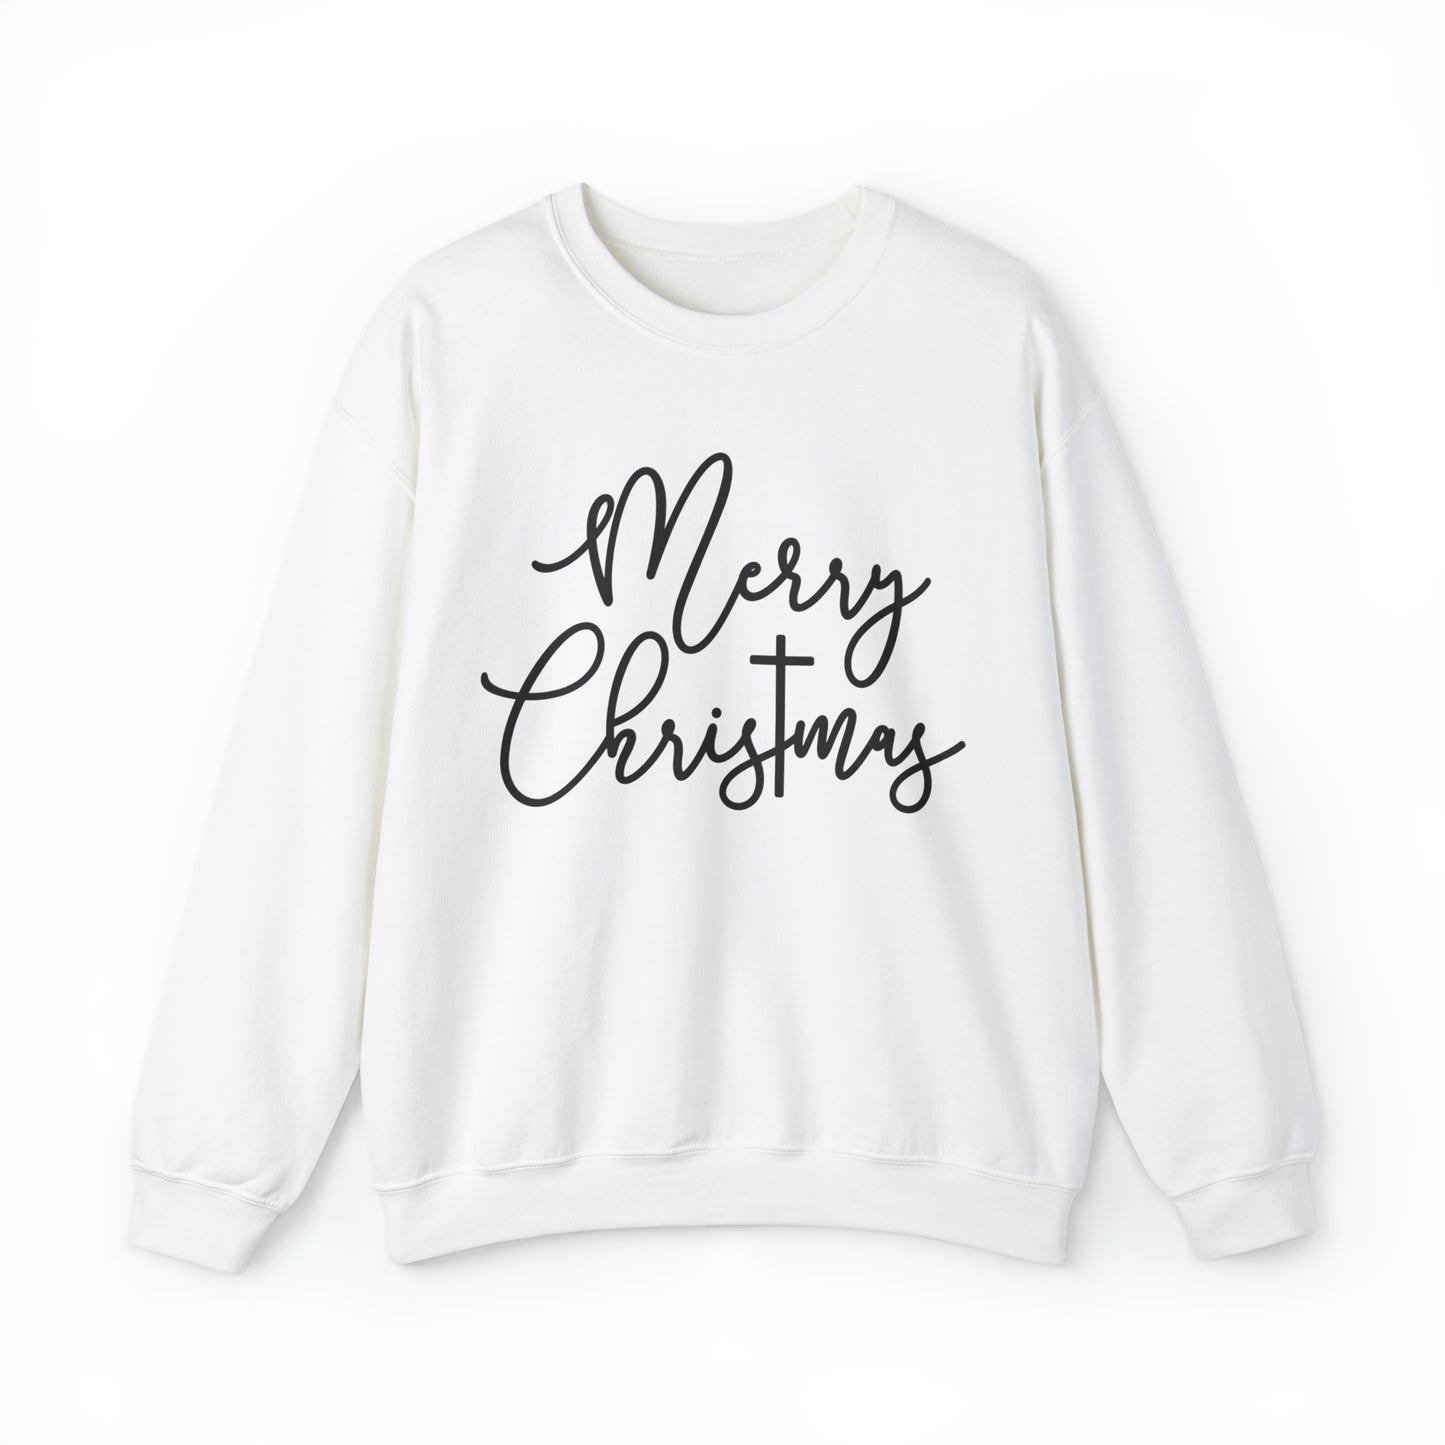 Merry ChrisTmas Women's Christmas Sweatshirt